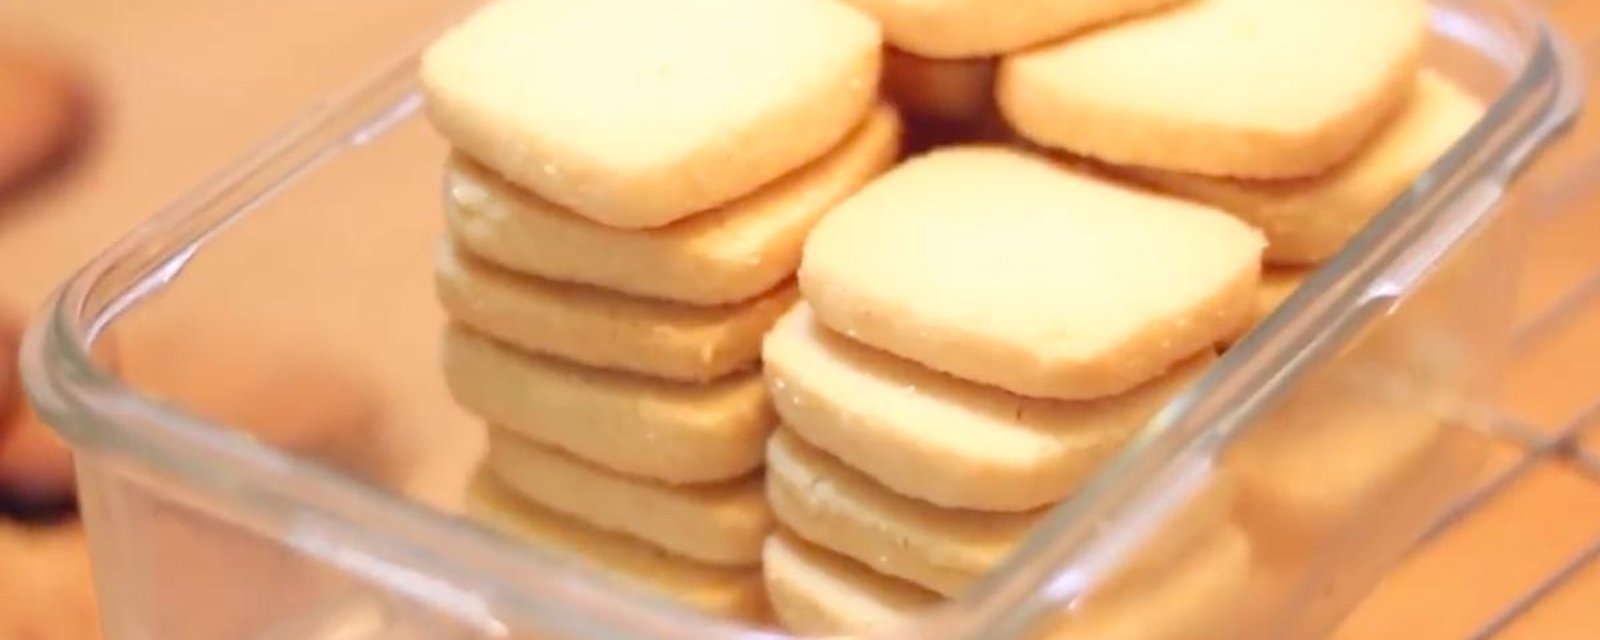 Voici la recette des biscuits les plus faciles à faire au monde!